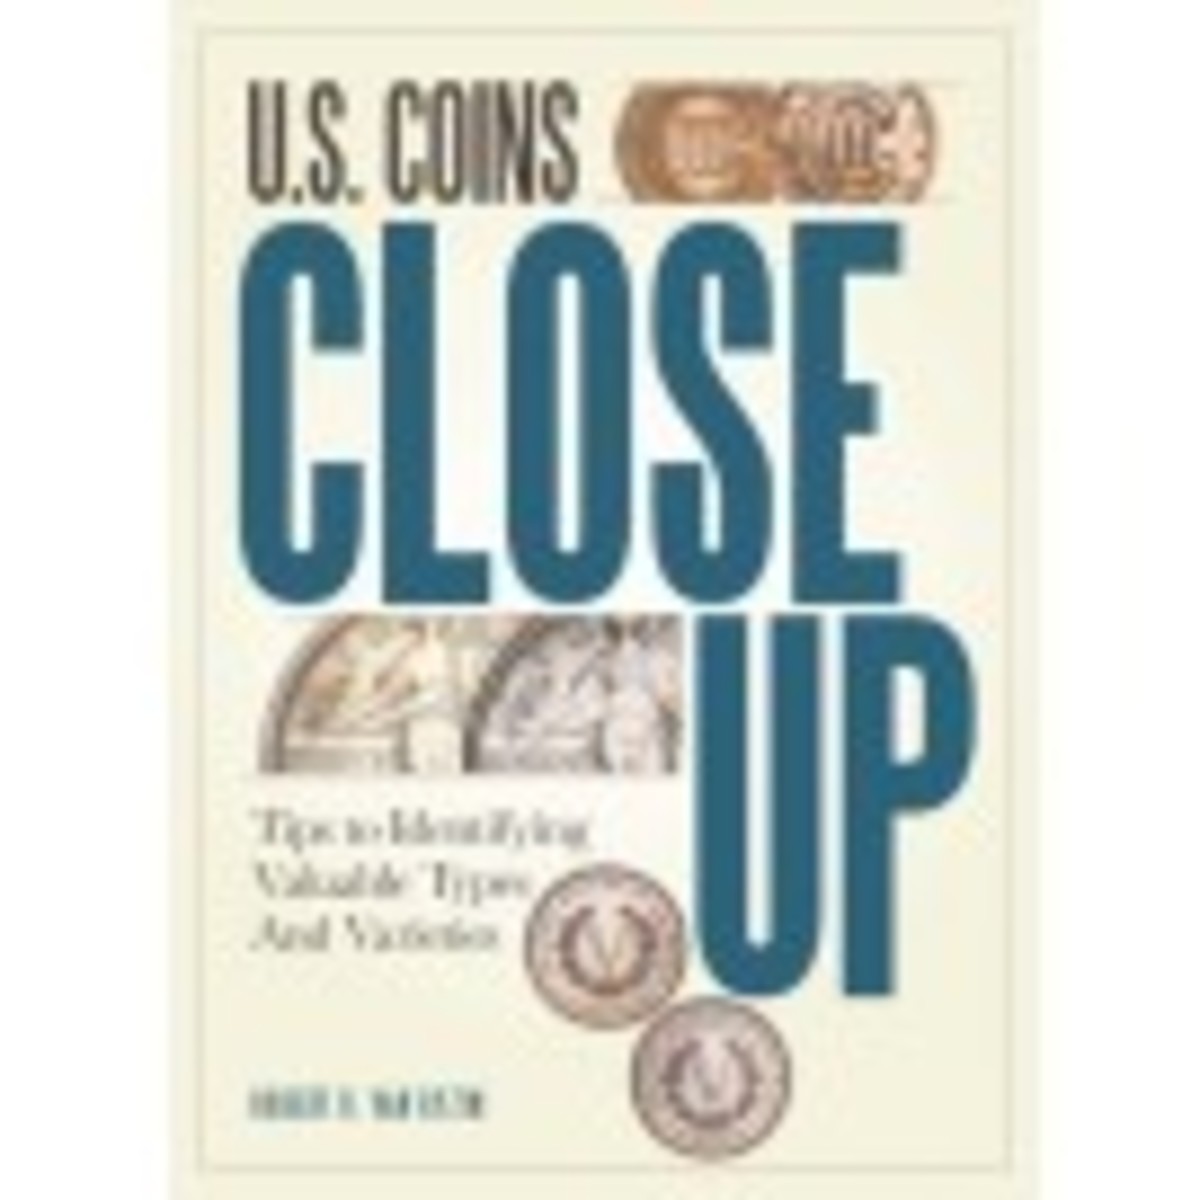 U.S. Coins Close Up